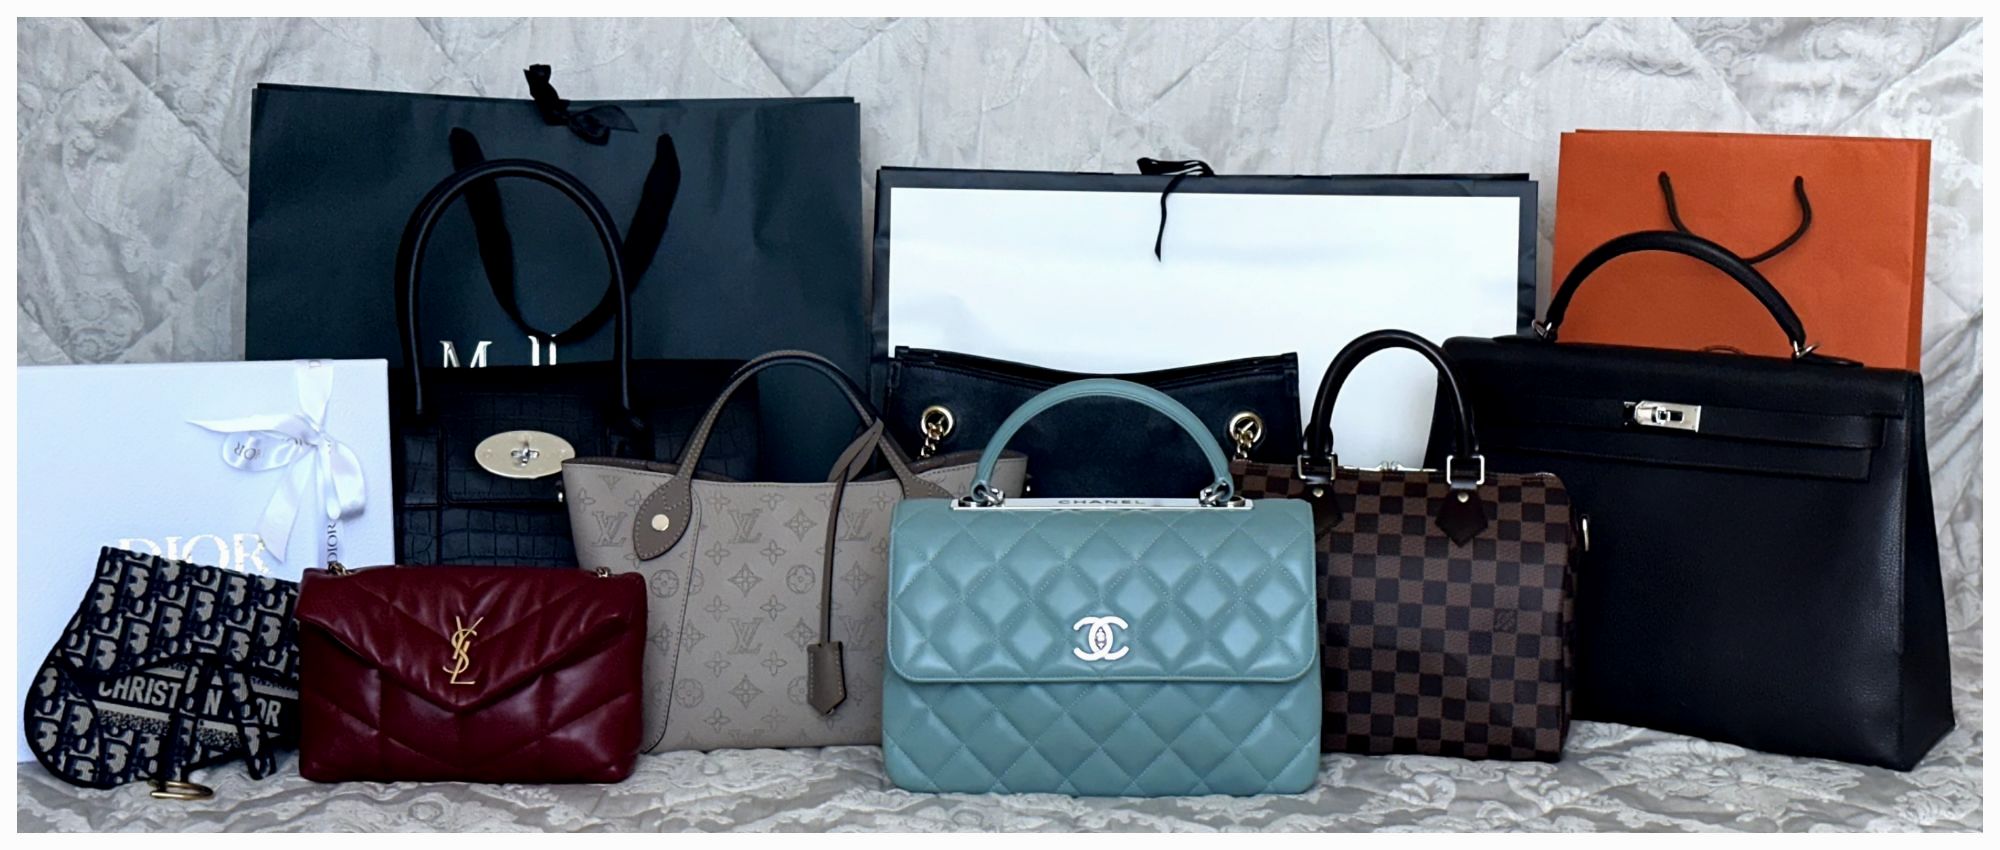 C H A N E L - Premium/Authentic handbags Online Selling